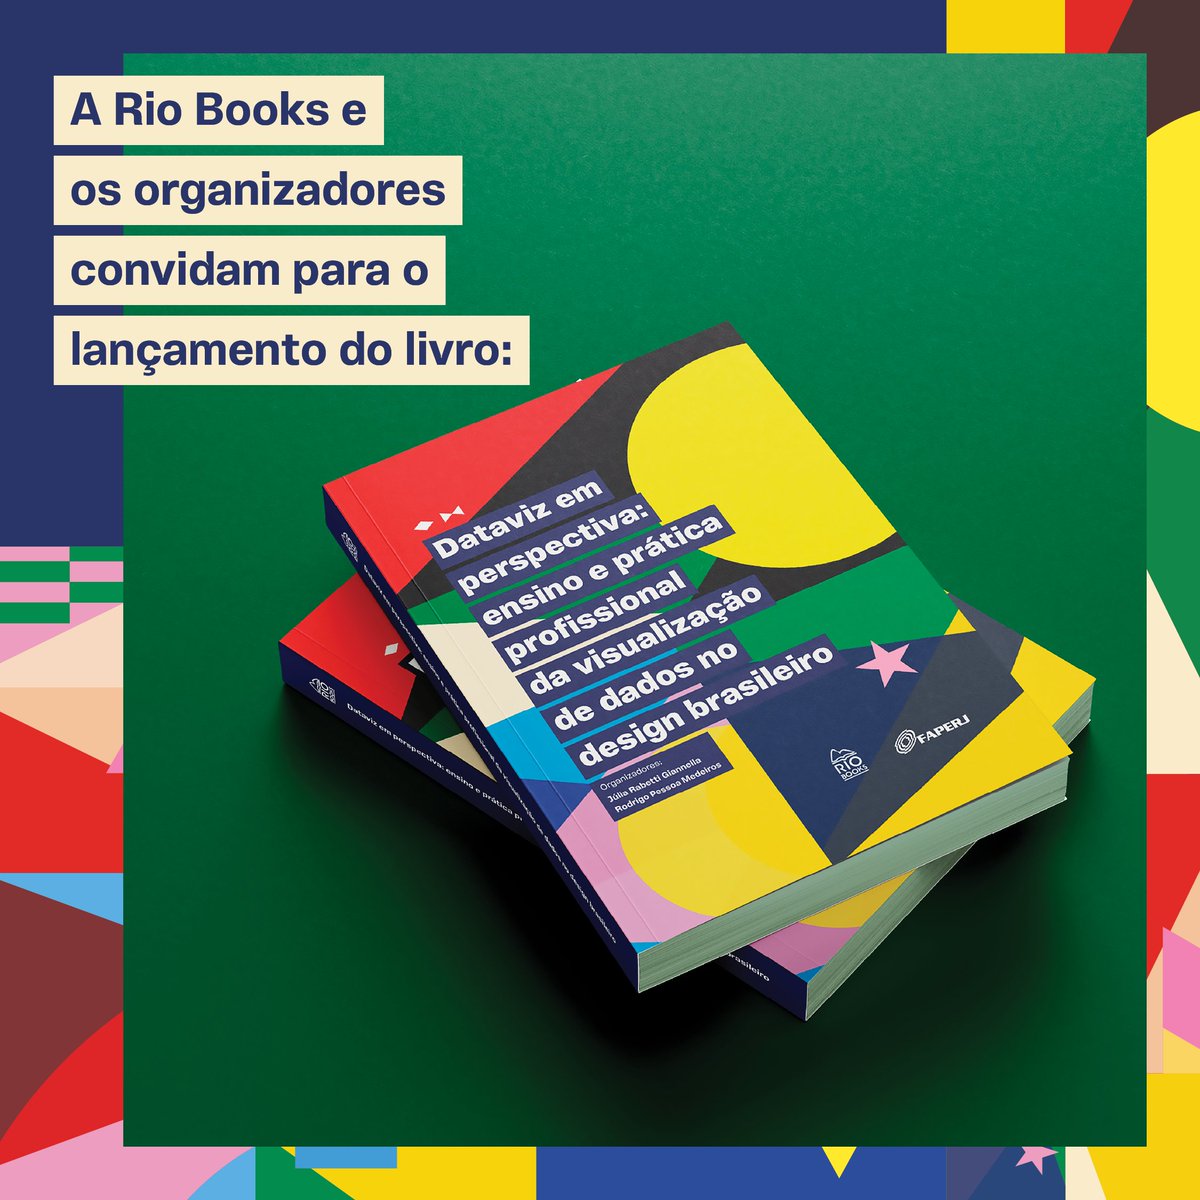 Eu, a @juliagiannella e a Rio Books convidamos para o lançamento presencial do nosso livro Dataviz em perspectiva: ensino e prática profissional da visualização de dados no design brasileiro